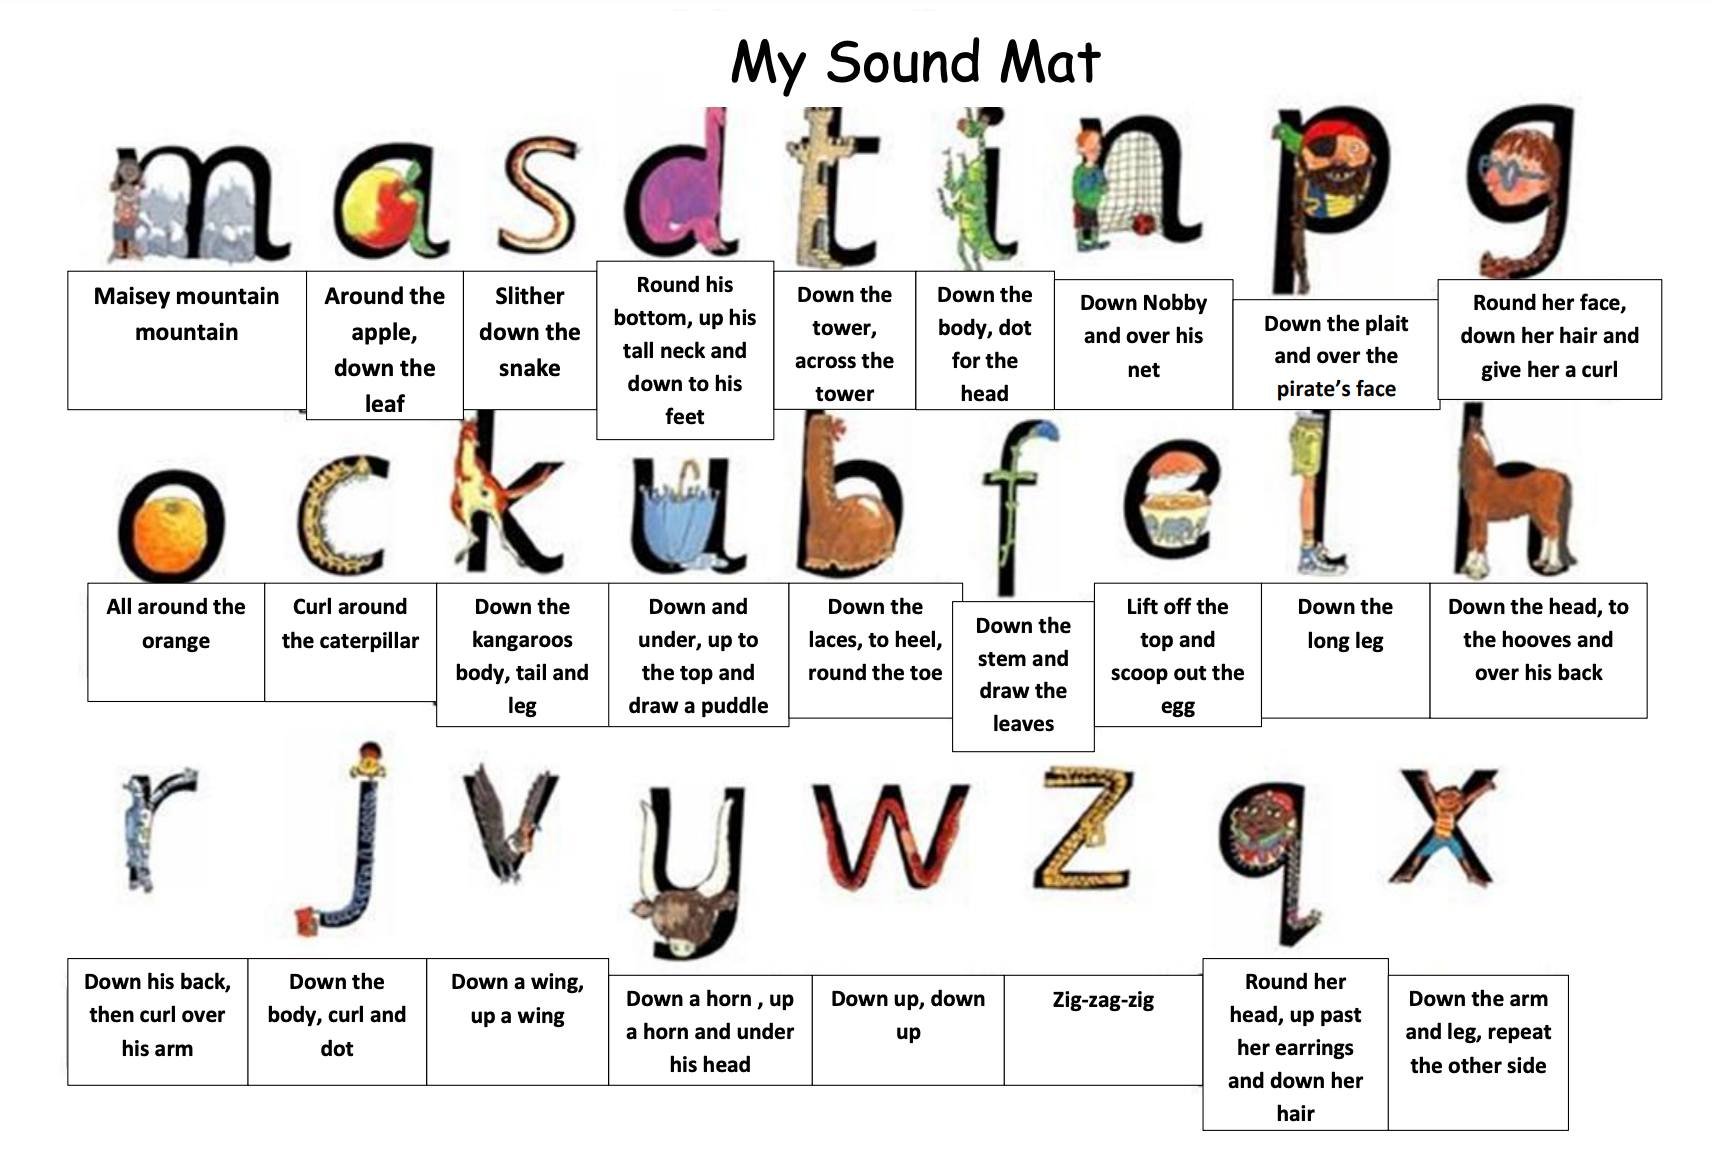 RWI Sound Mat (правильніше перекласти як килимок звуків), що використовується у британських школах